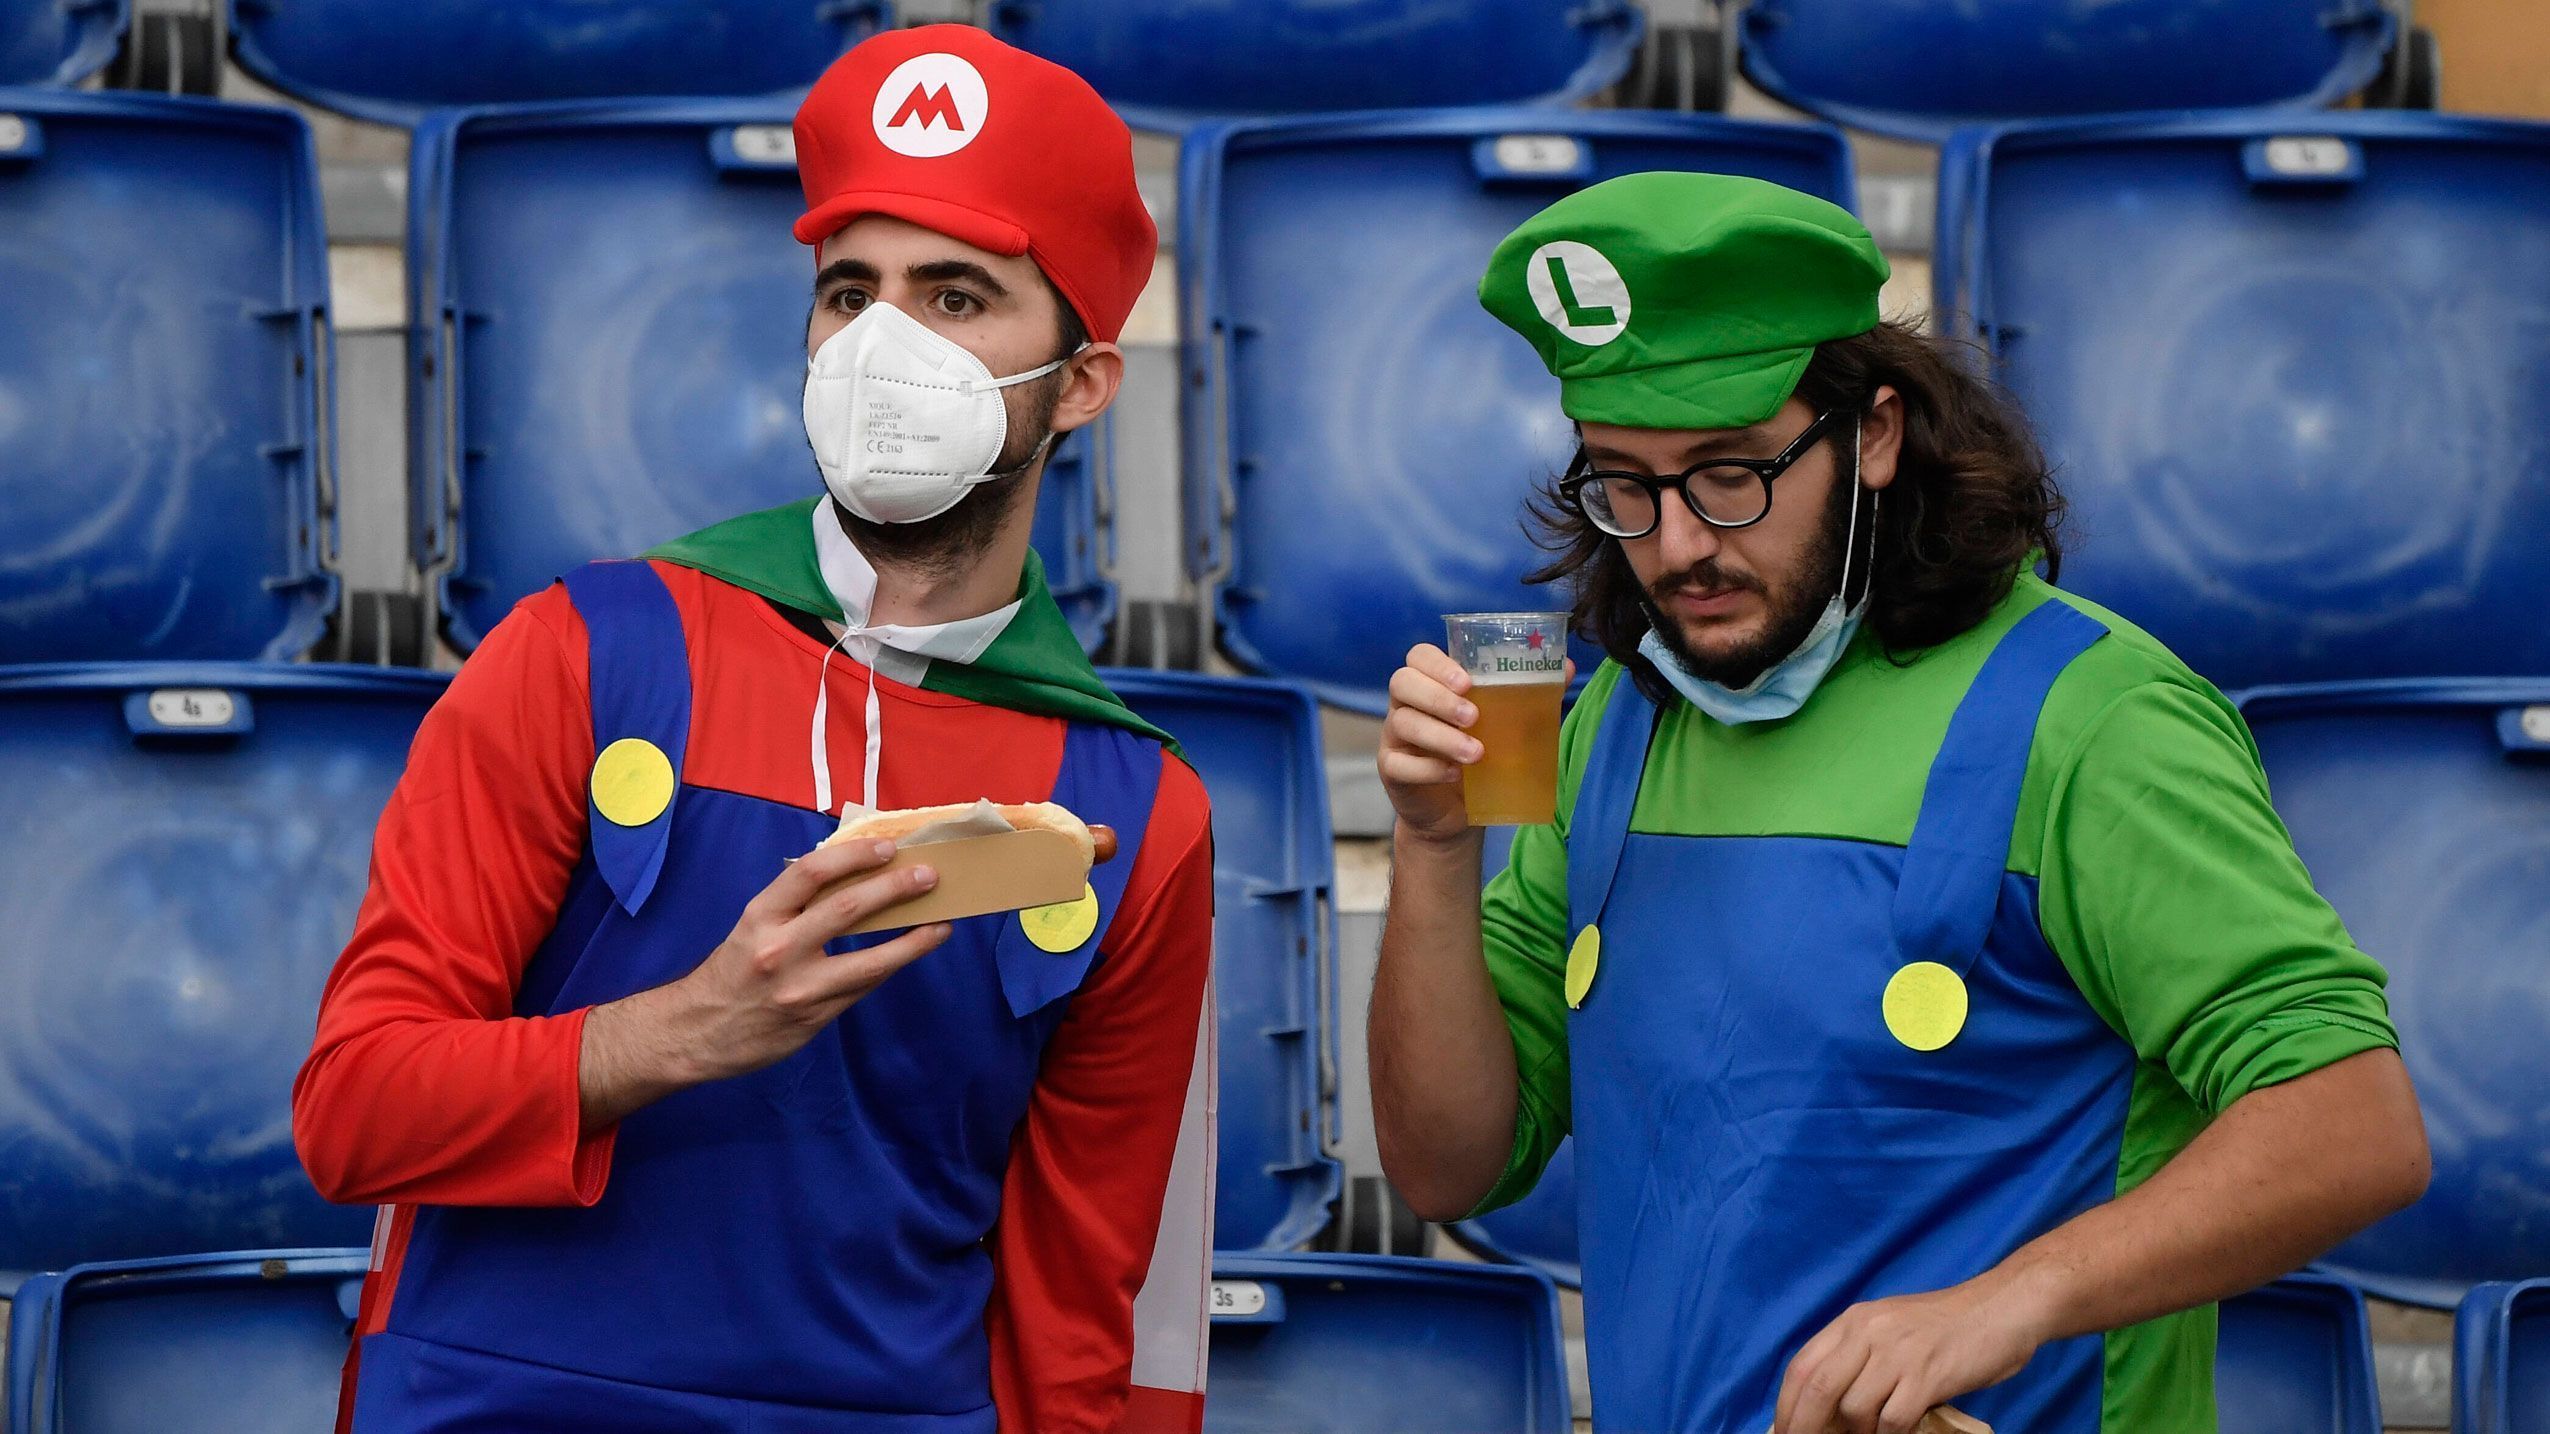 
                <strong>Mario und Luigi halten dagegen</strong><br>
                Zwar nicht mit ganz so viel Euphorie vor dem Anpfiff, aber auch die beiden italienischen Klempner-Brüder sind heiß auf die Partie.
              